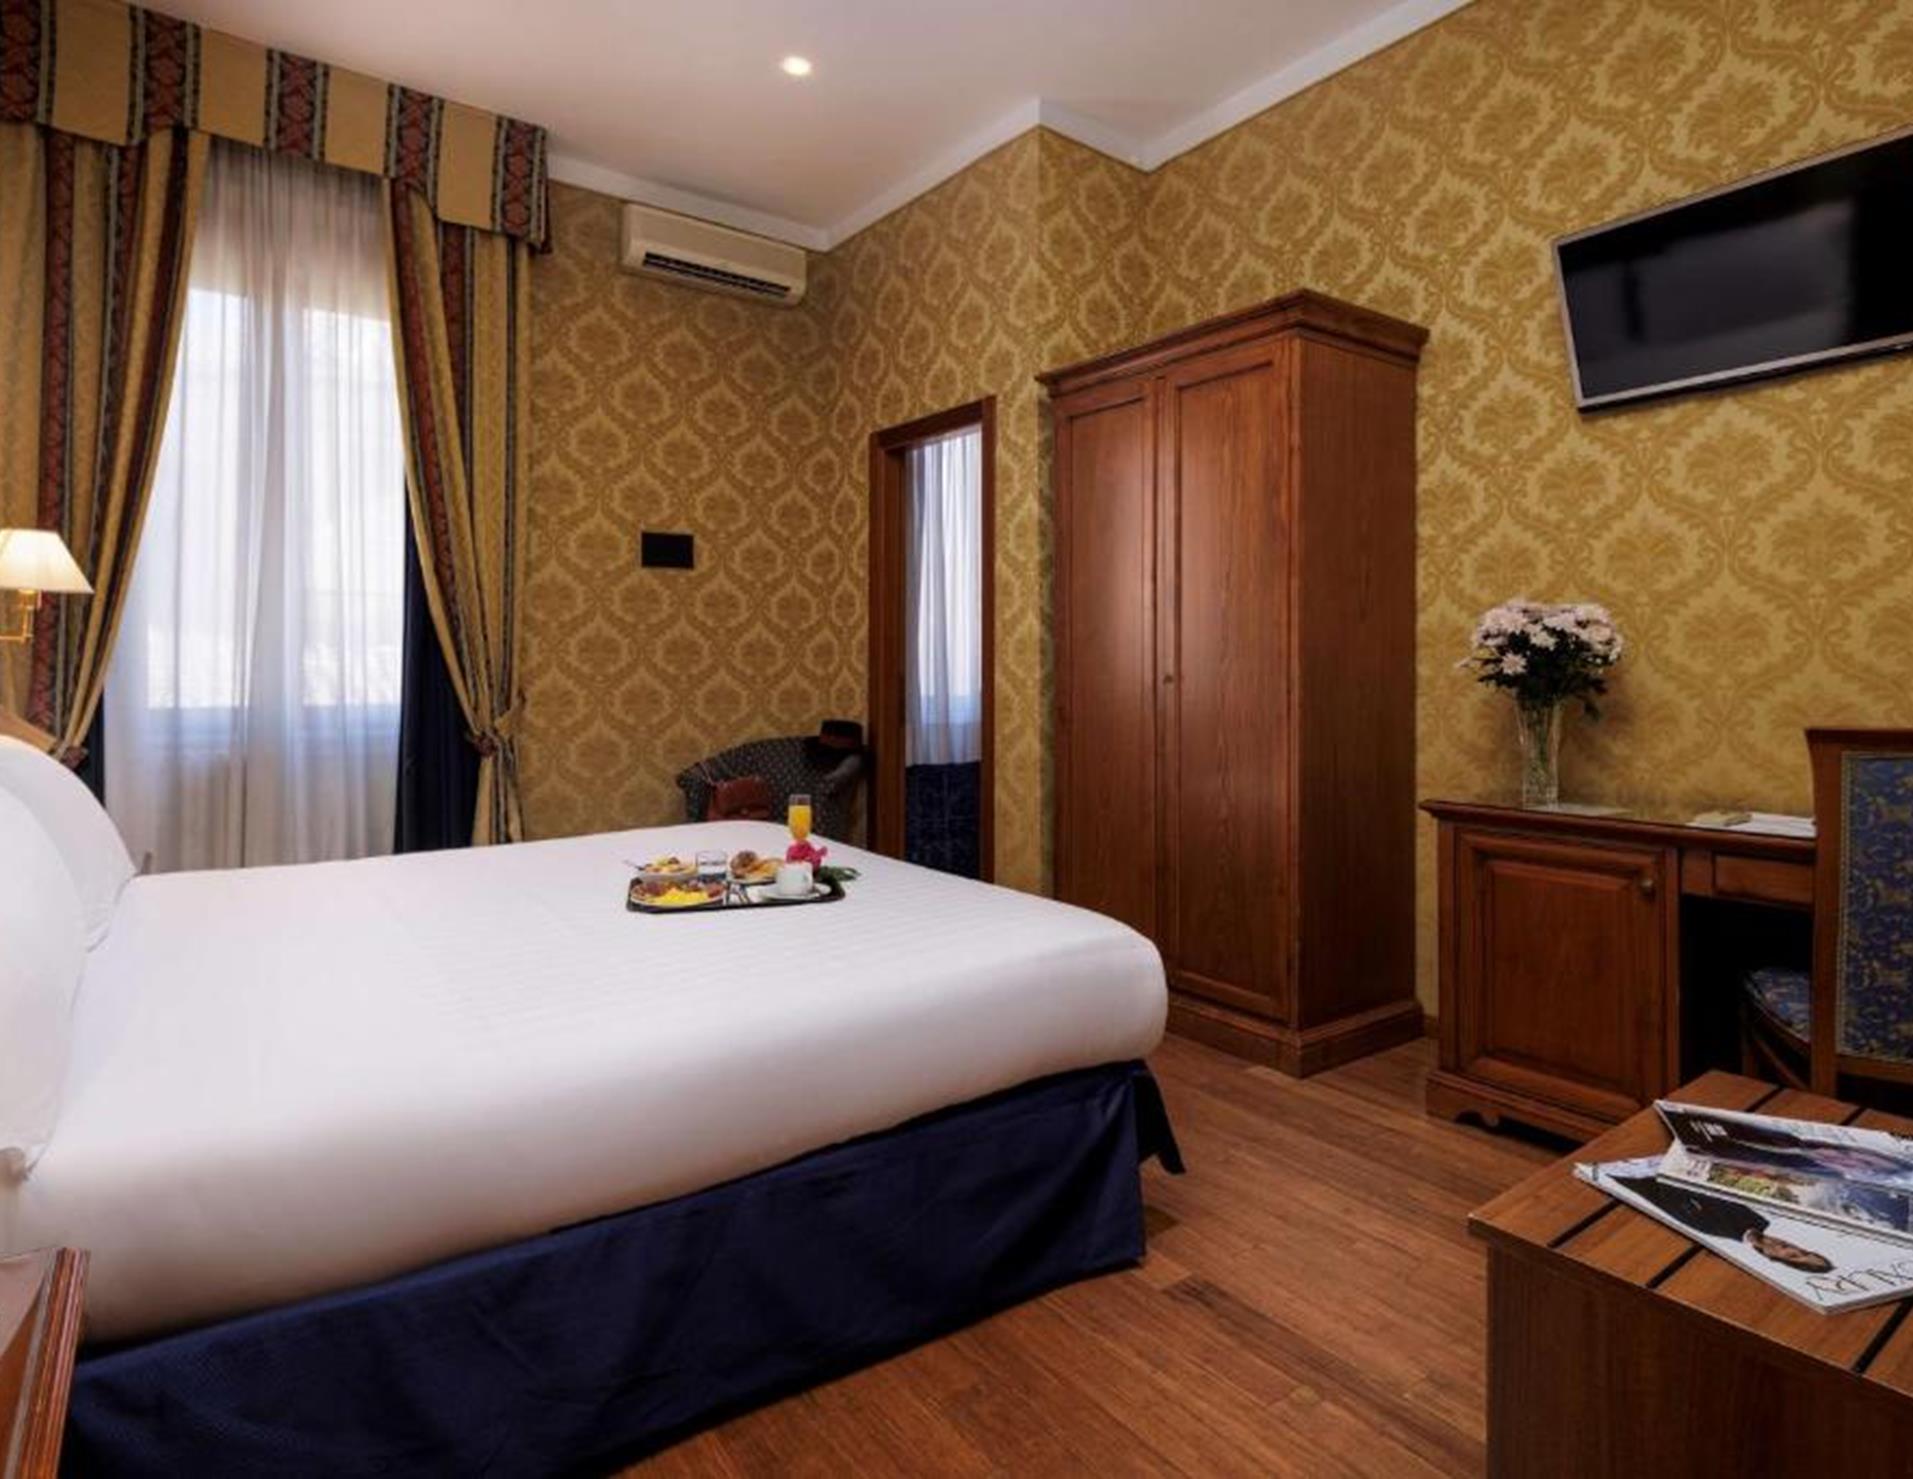 Hotel Raffaello - Room 6